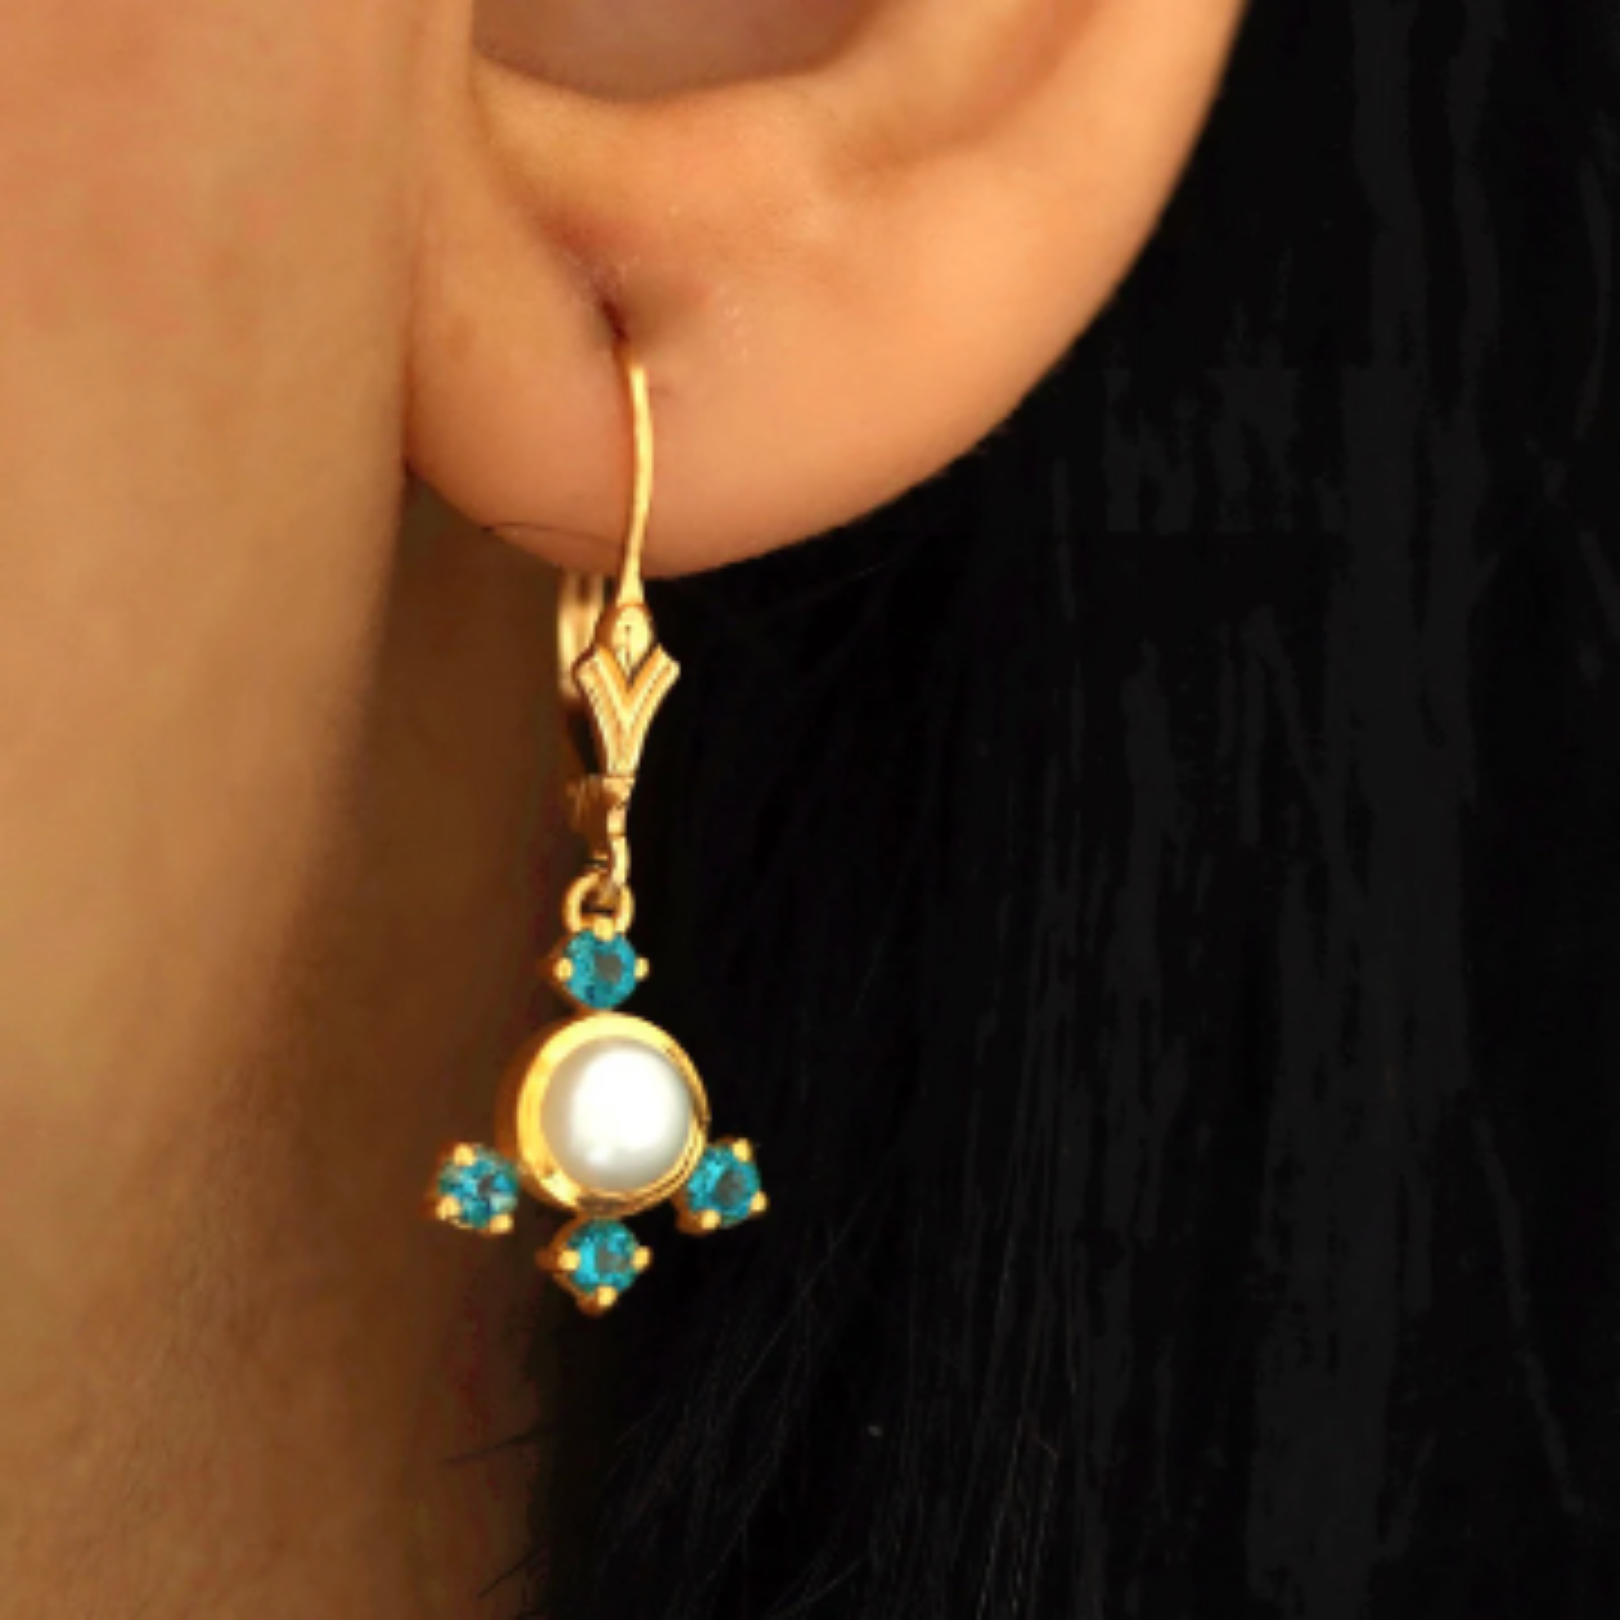 Multi gemstone chandelier earrings in pearl and london topaz